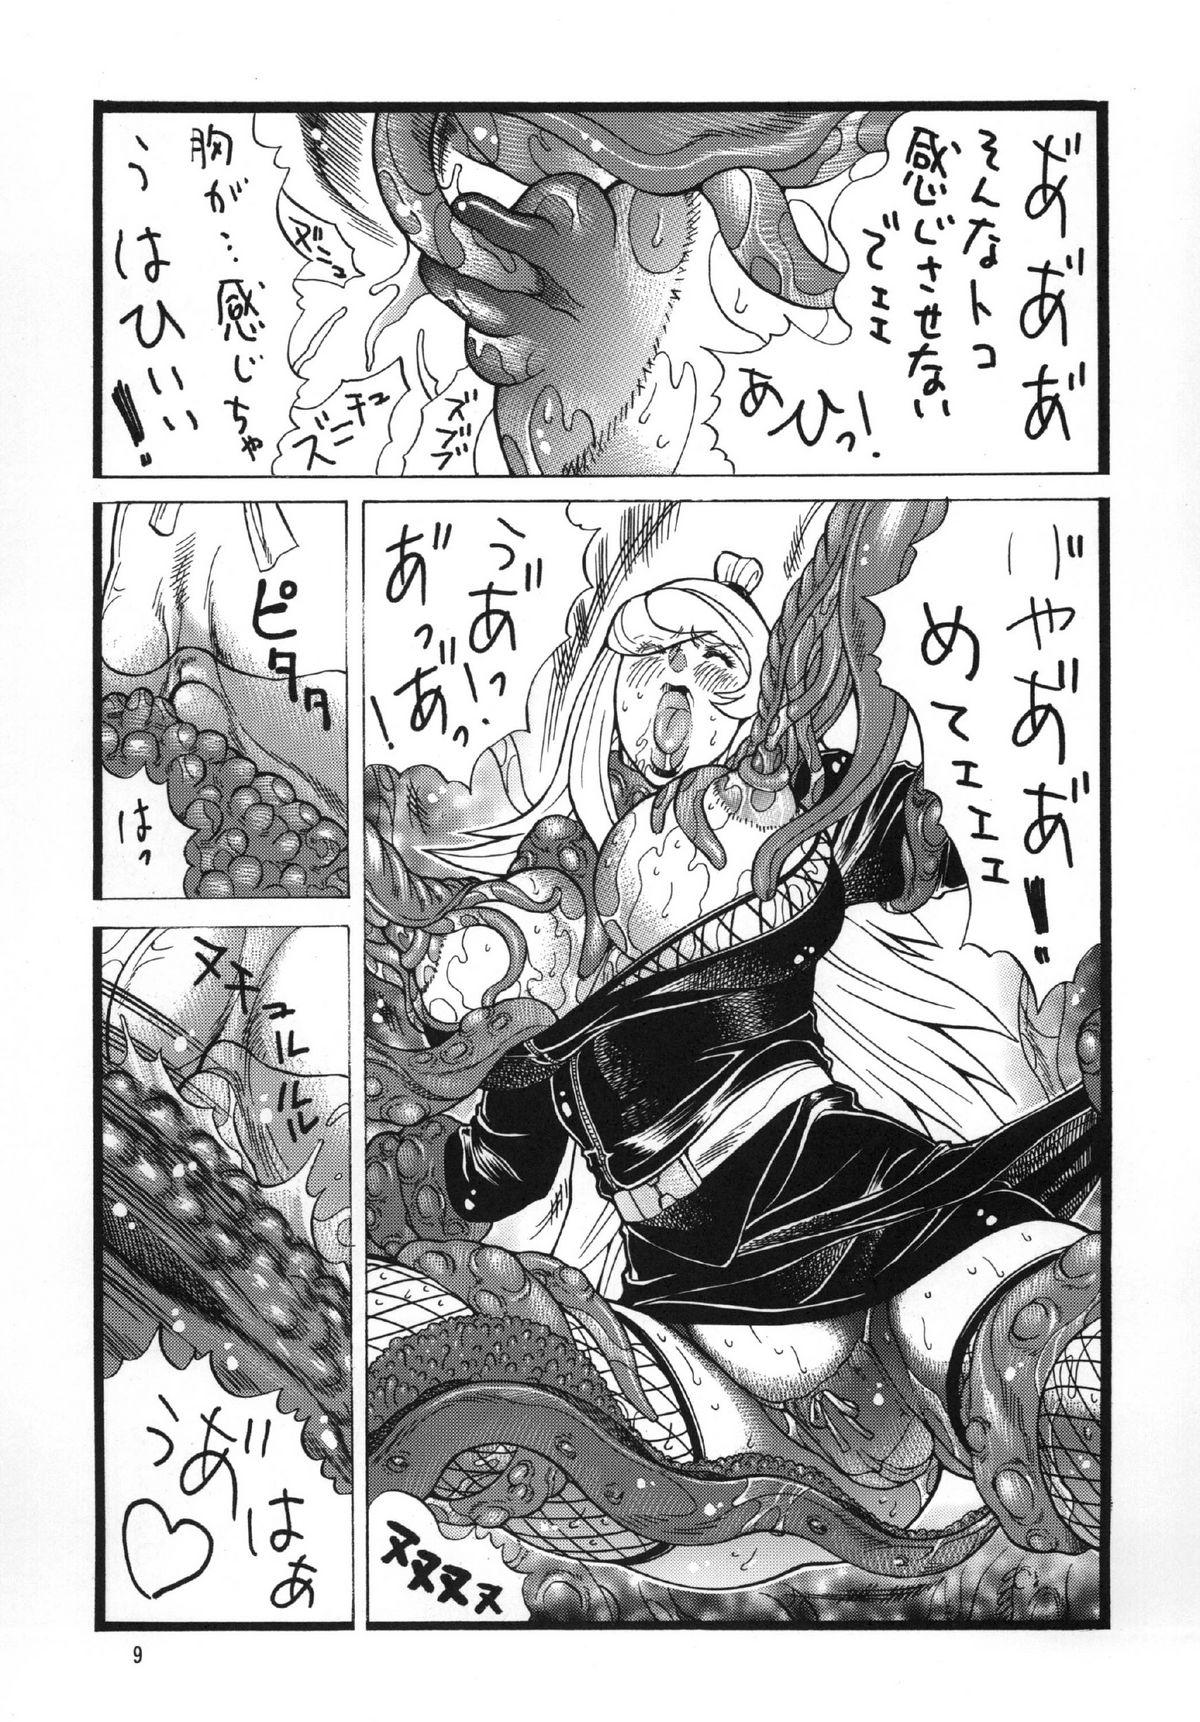 Uncut Goriman Madam 2 - Naruto Godannar Culo Grande - Page 9